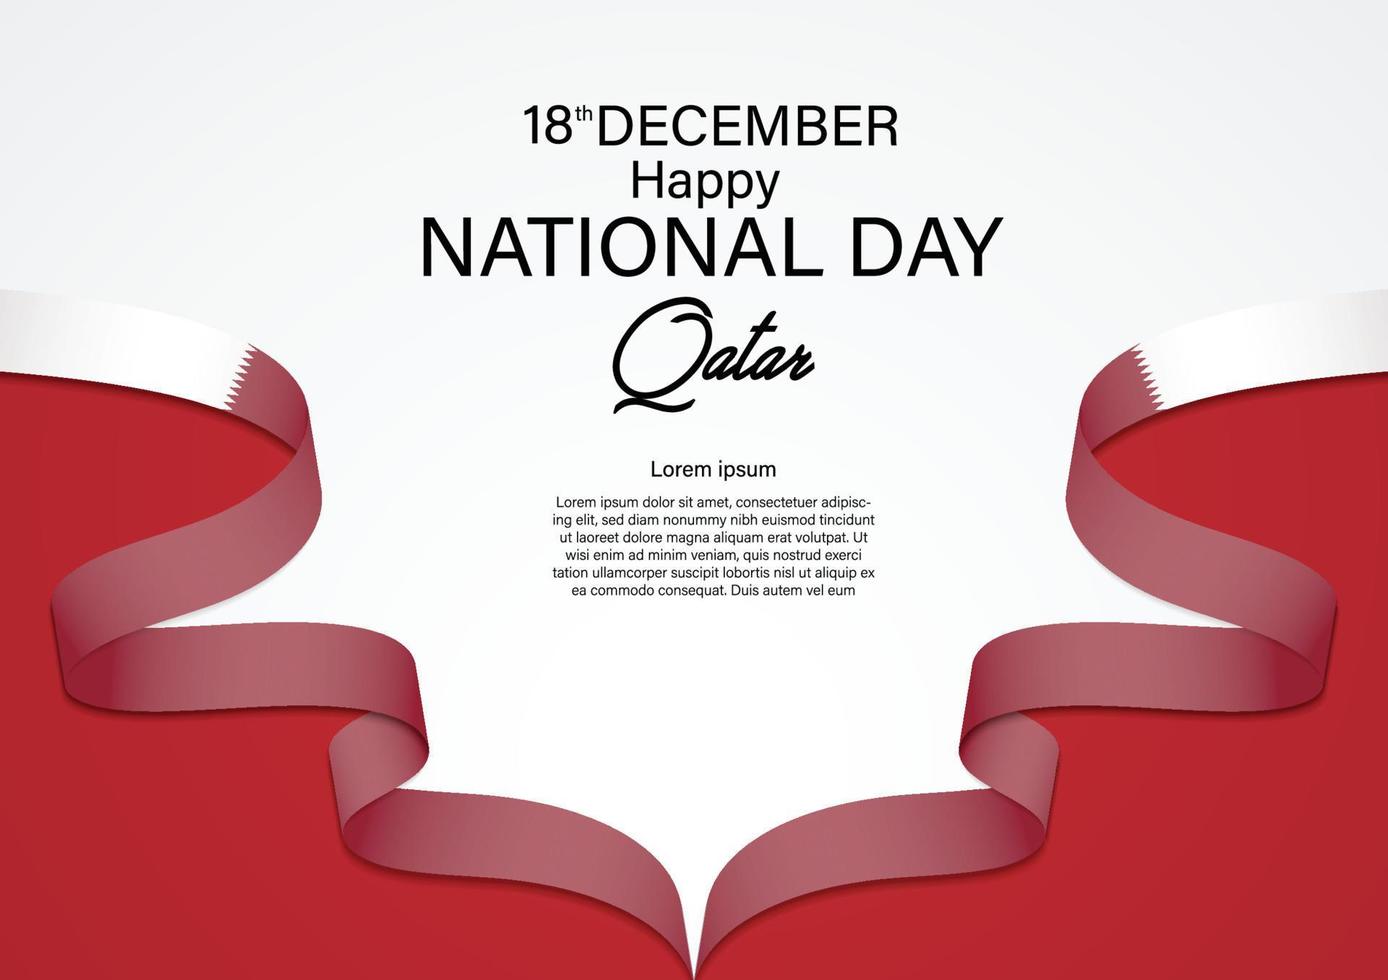 dia nacional do catar 18 de dezembro com a cor da bandeira do catar da fita. ilustração vetorial vetor